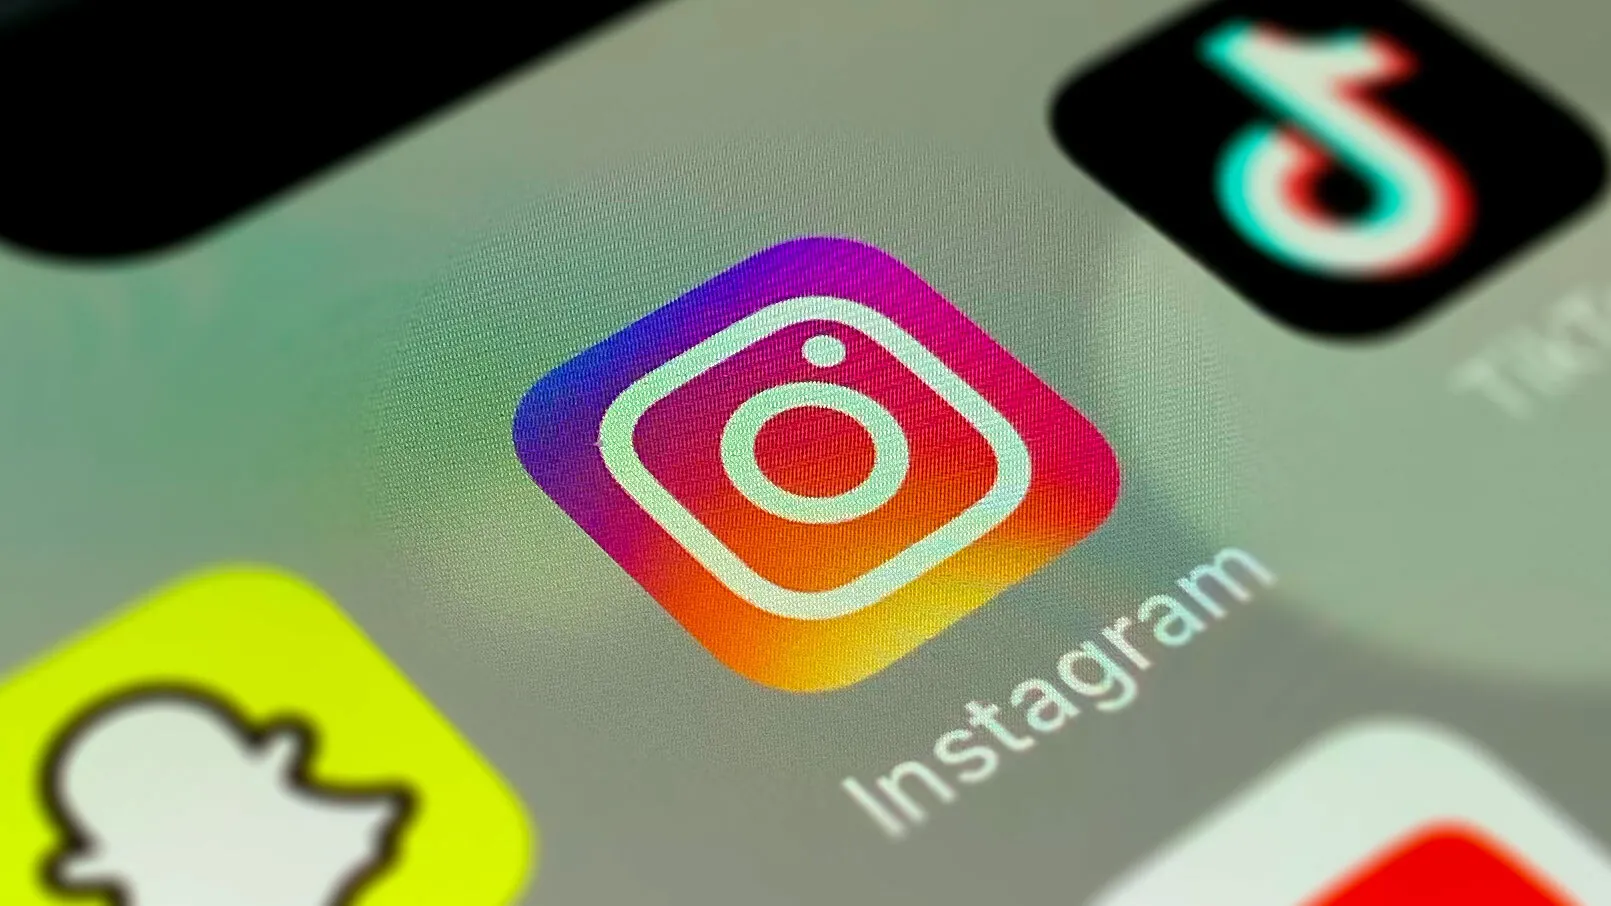 Instagram utvecklar anpassningsbara "AI-vänner" - personliga chatbots för socialt umgänge